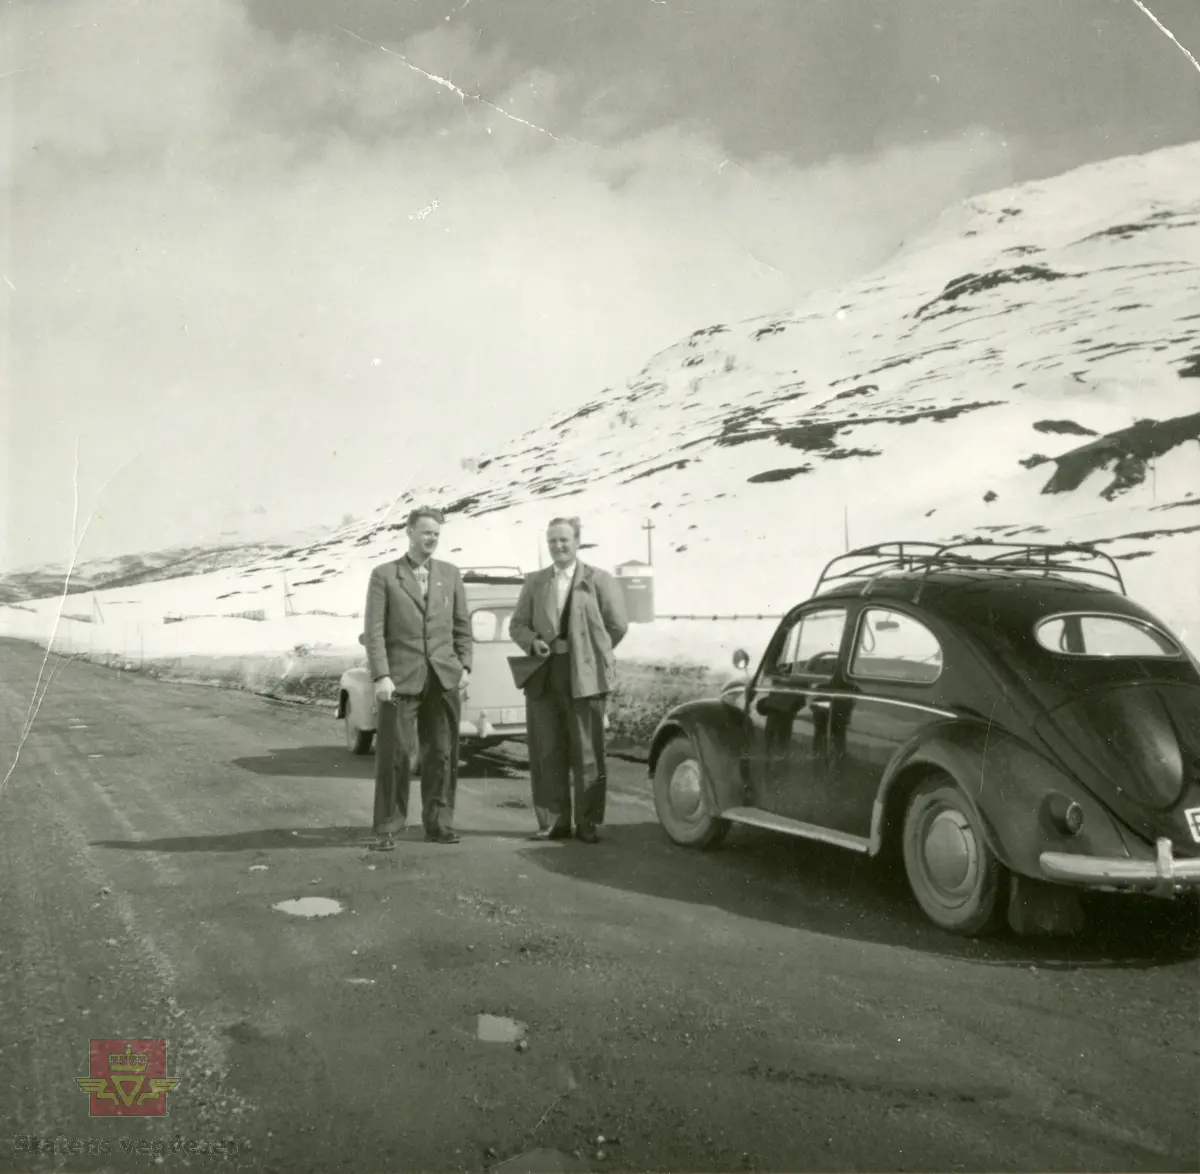 Befaring andre mai 1958. VW Boble fra 1953-1957. Regnr. E-1398. 
I bakgrunnen Statens vegvesen varebil, registreringsnr. E-16477. Bilen er en Opel Olympia 1952-1953 modell.
Bak bilene skimtes KNA Veitelefon. 
Personen fra venstre er ukjent, til høyre står oppsynsmann Kristen Eriksen.